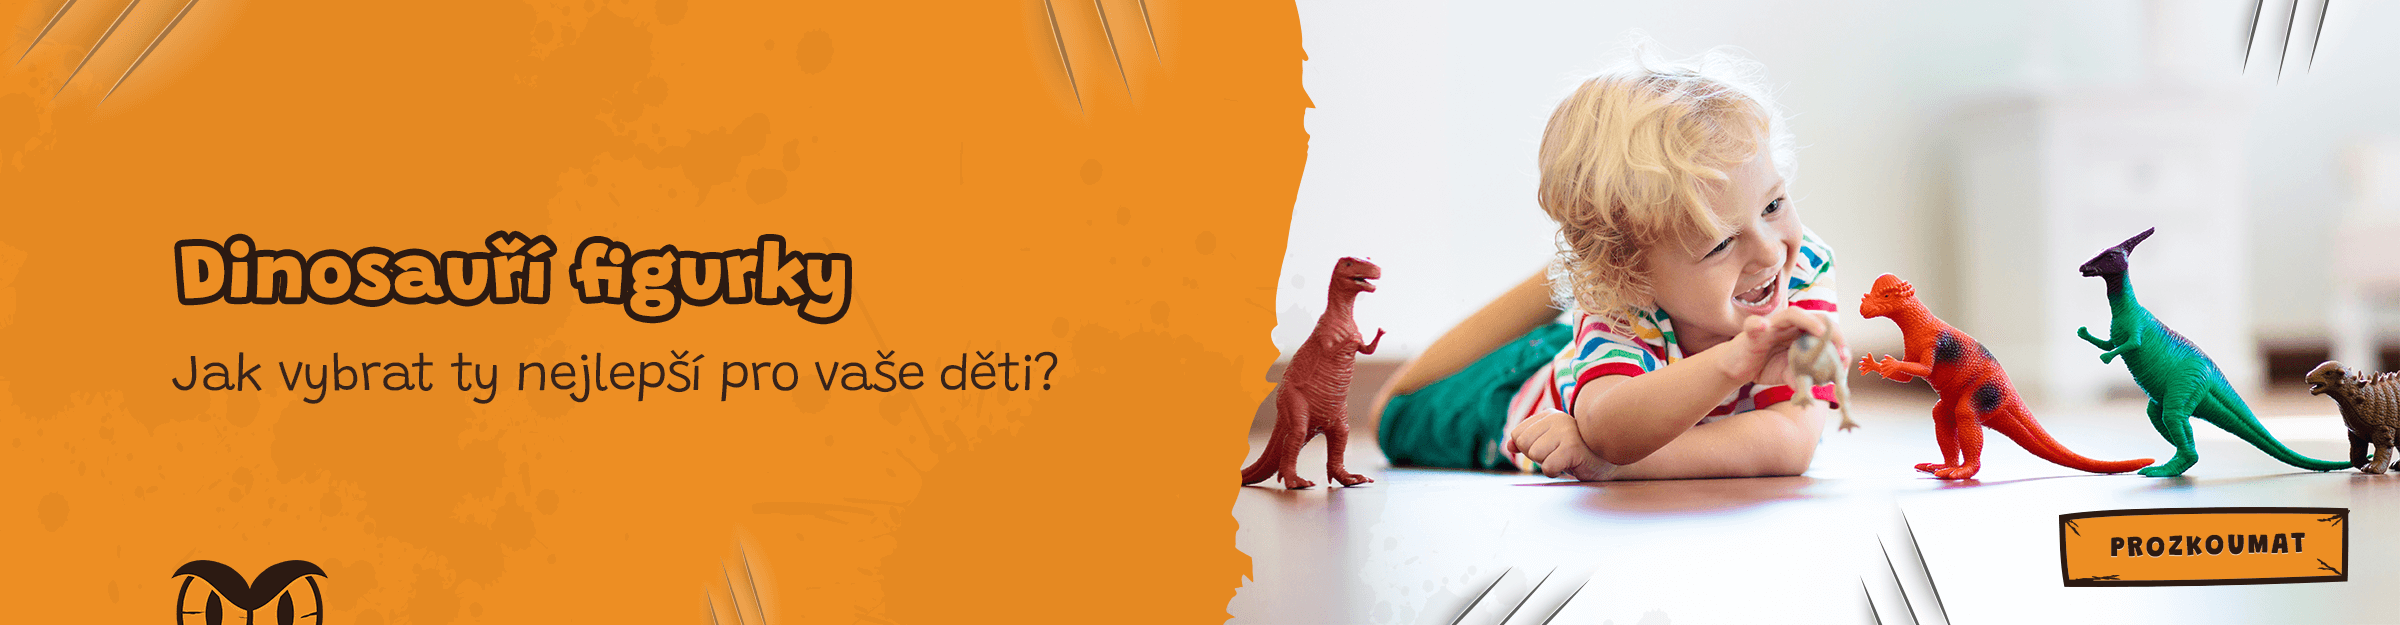 Jak vybrat dinosauří figurky?